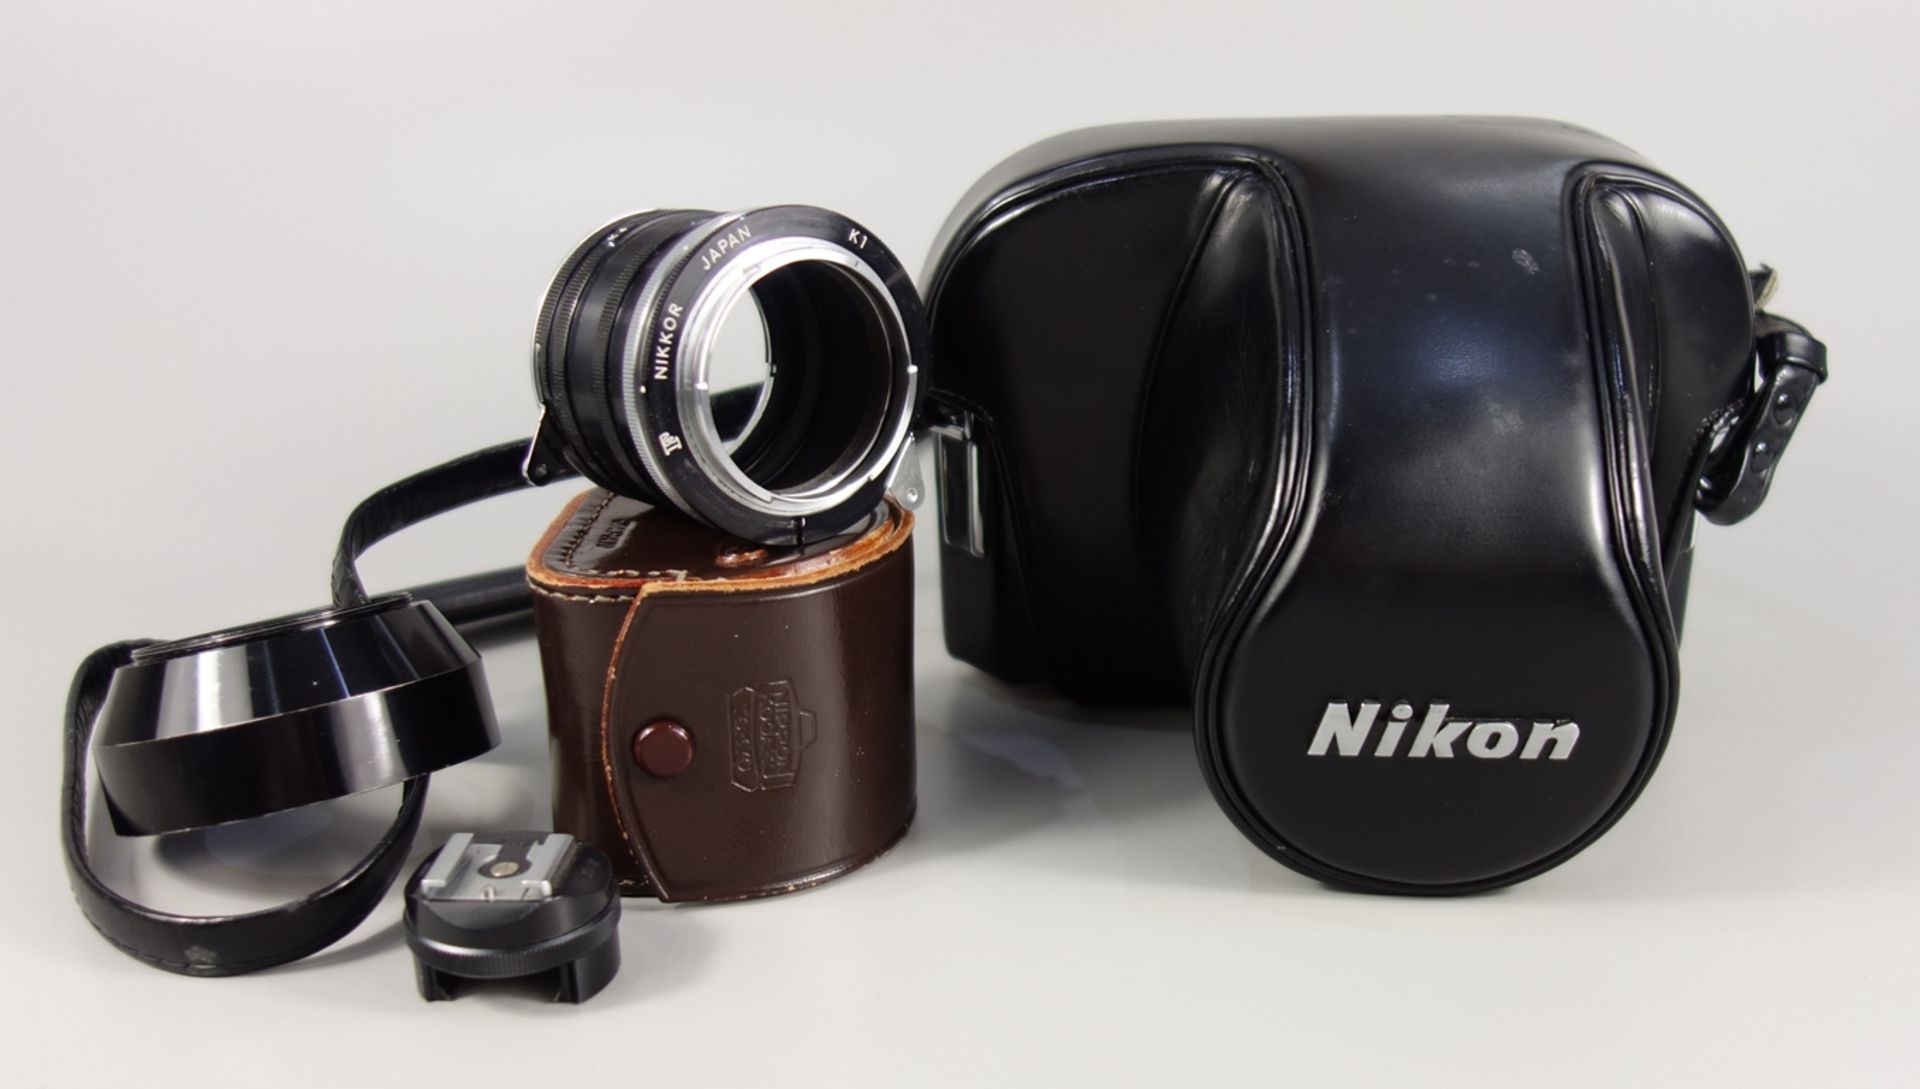 Nikon F2 Photomic, Spiegelreflexkamera, schwarz, 1970er Jahre, Serien-Nr. 7240495, mit Objektiv - Bild 5 aus 5